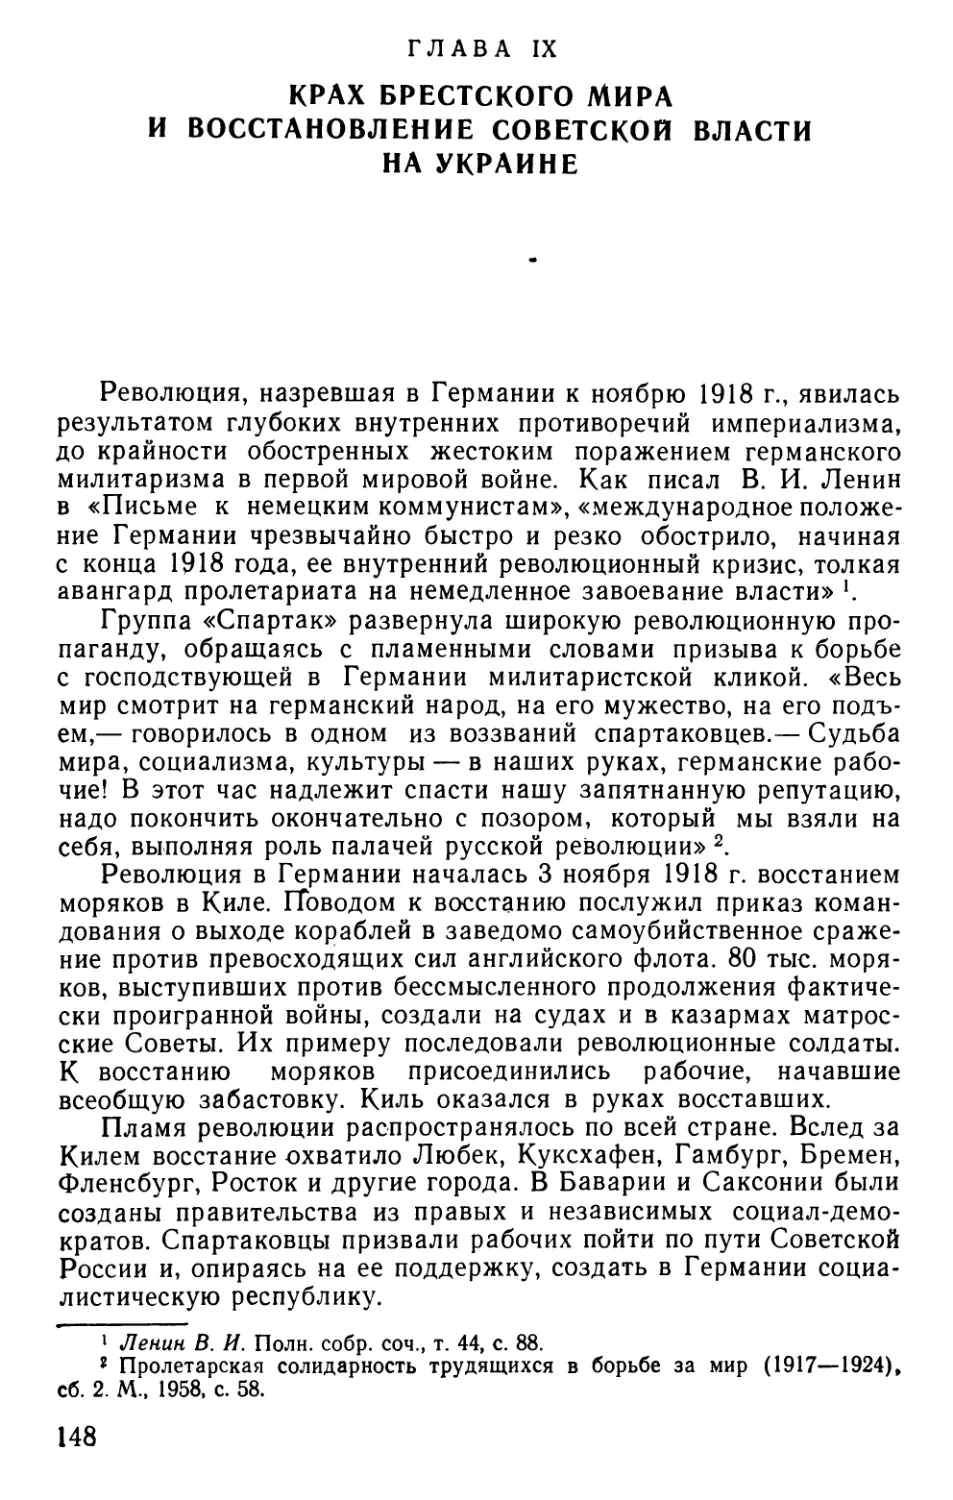 Глава IX. Крах Брестского мира и восстановление Советской власти на Украине